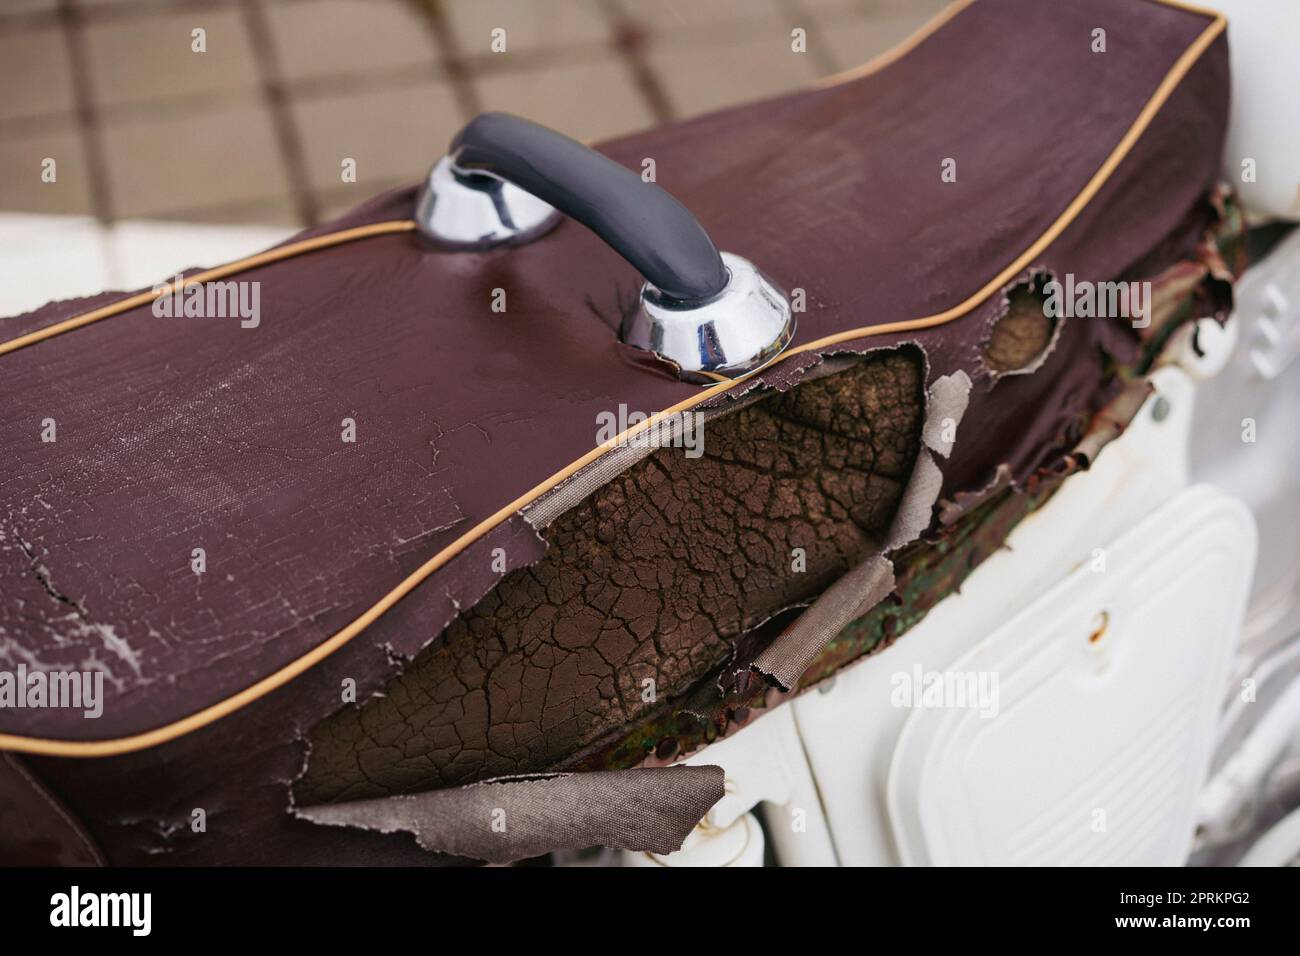 Brauner Motorrad-Sattelbezug aus Kunstleder (PVC oder PU), gerissen, um den Schwamm im Inneren zu sehen. Stockfoto